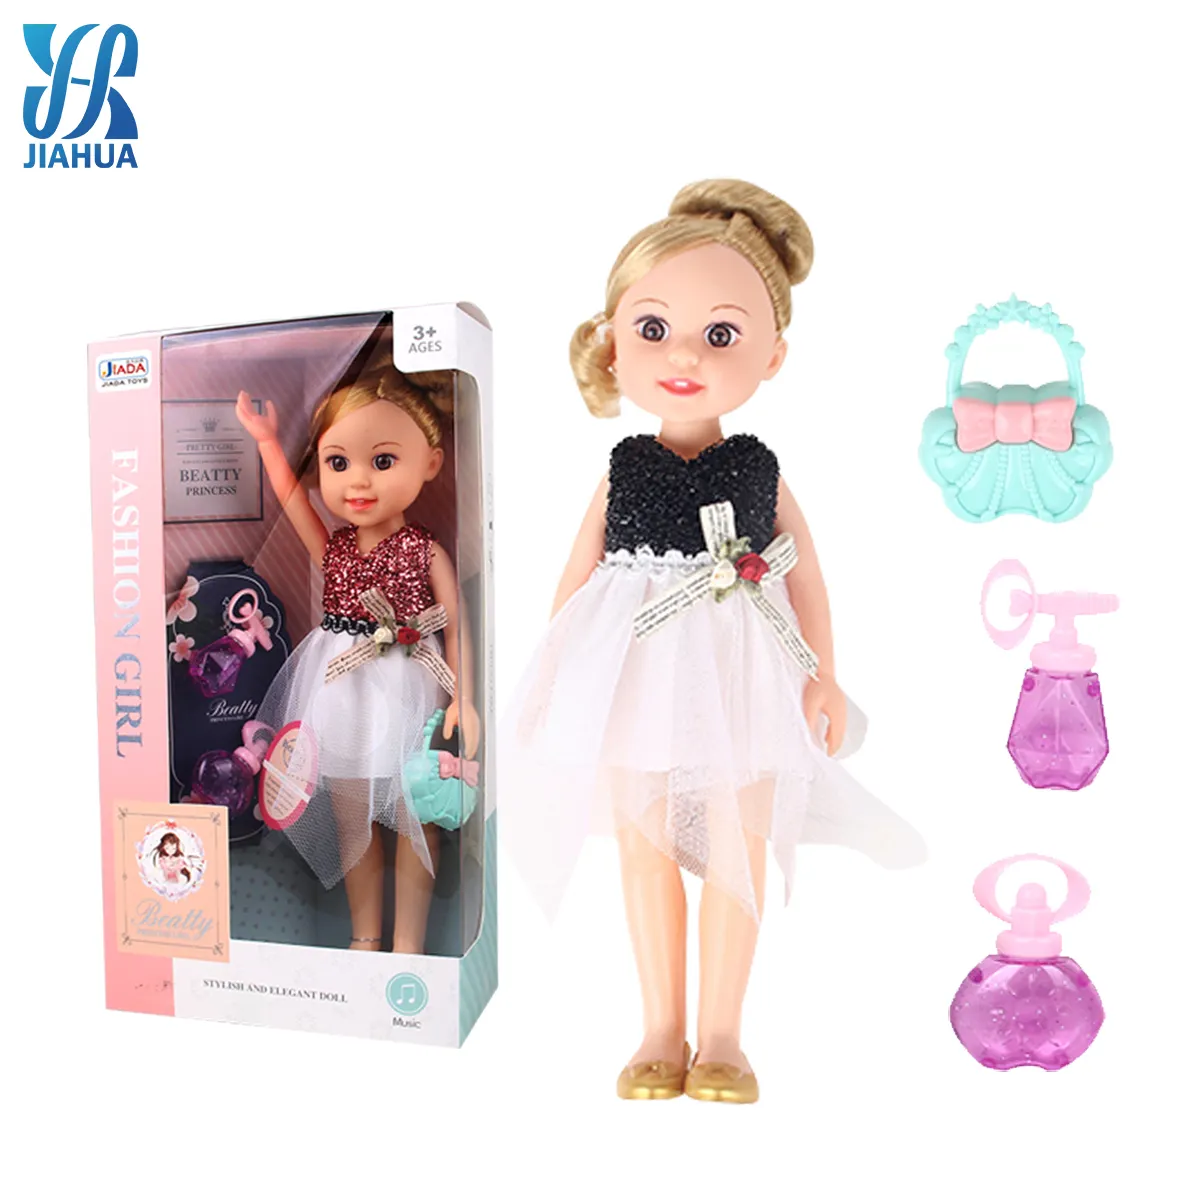 Boneka Dekorasi Muneca 13 Inci, Mainan Putri Frozen Toko Pemasok Tubuh Boneka Dekorasi Muneca Murah 13 Inci